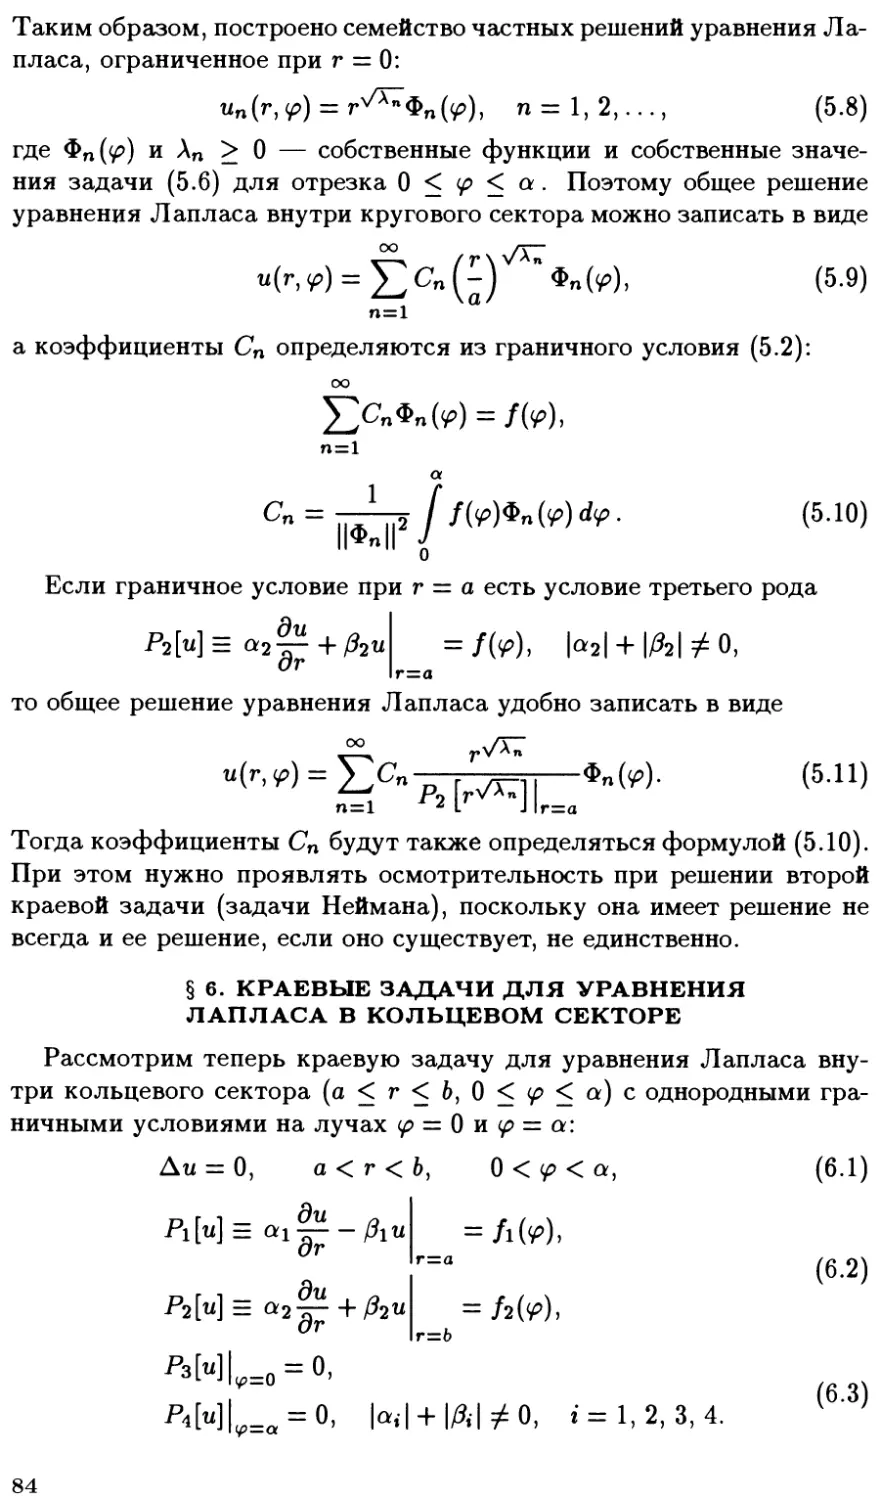 §6. Краевые задачи для уравнения Лапласа в кольцевом секторе